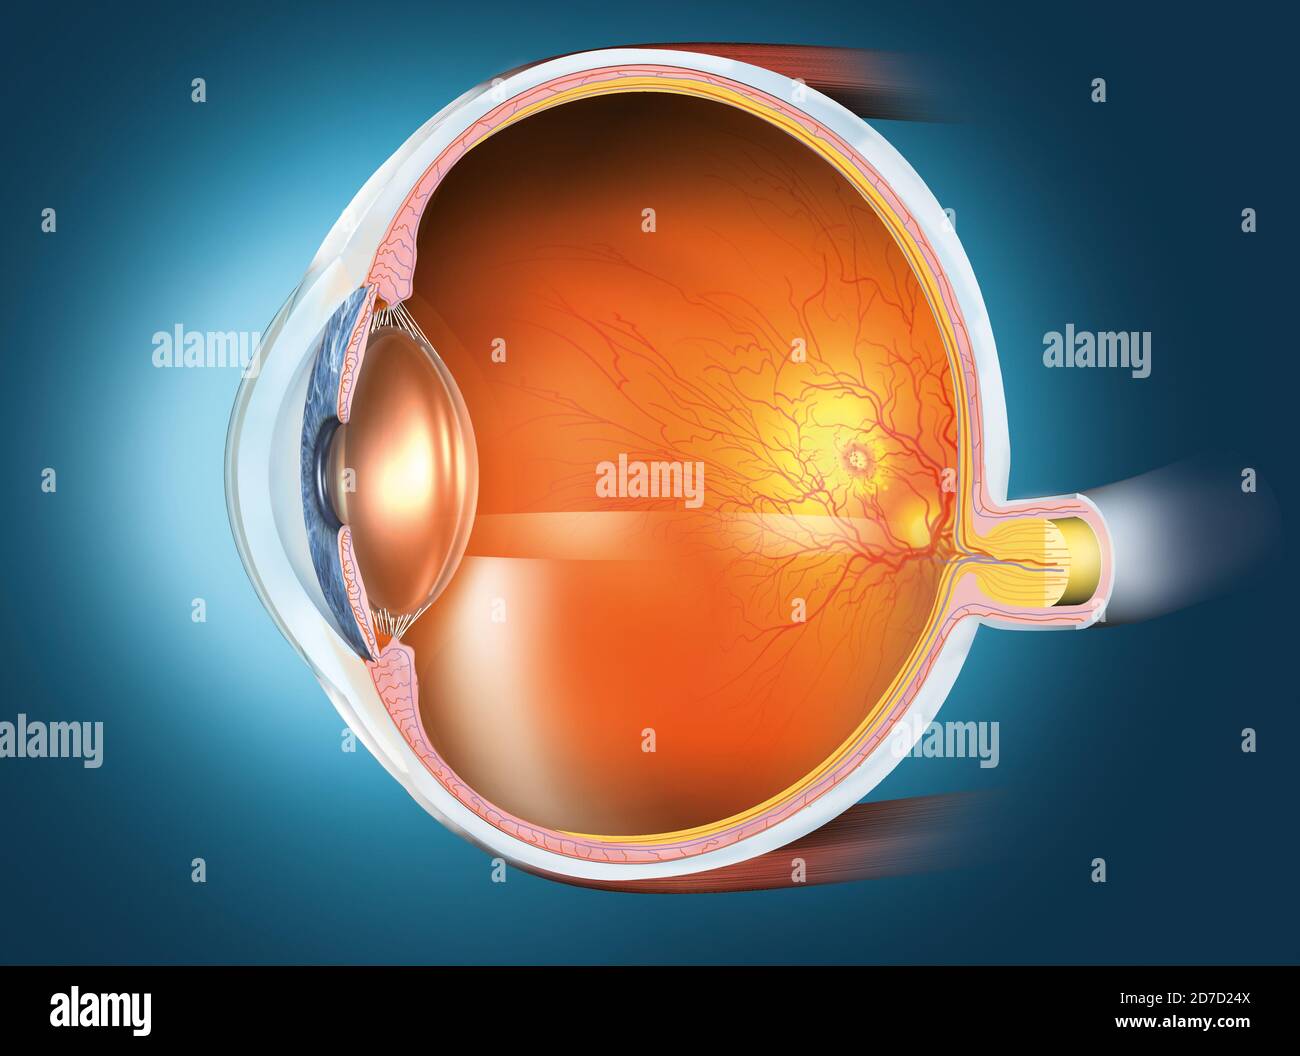 Ilustración médicamente 3D que muestra un ojo humano sano con lente,  retina, pupila, iris, cámara anterior, cámara posterior, cuerpo ciliar,  bola ocular, sangre Fotografía de stock - Alamy